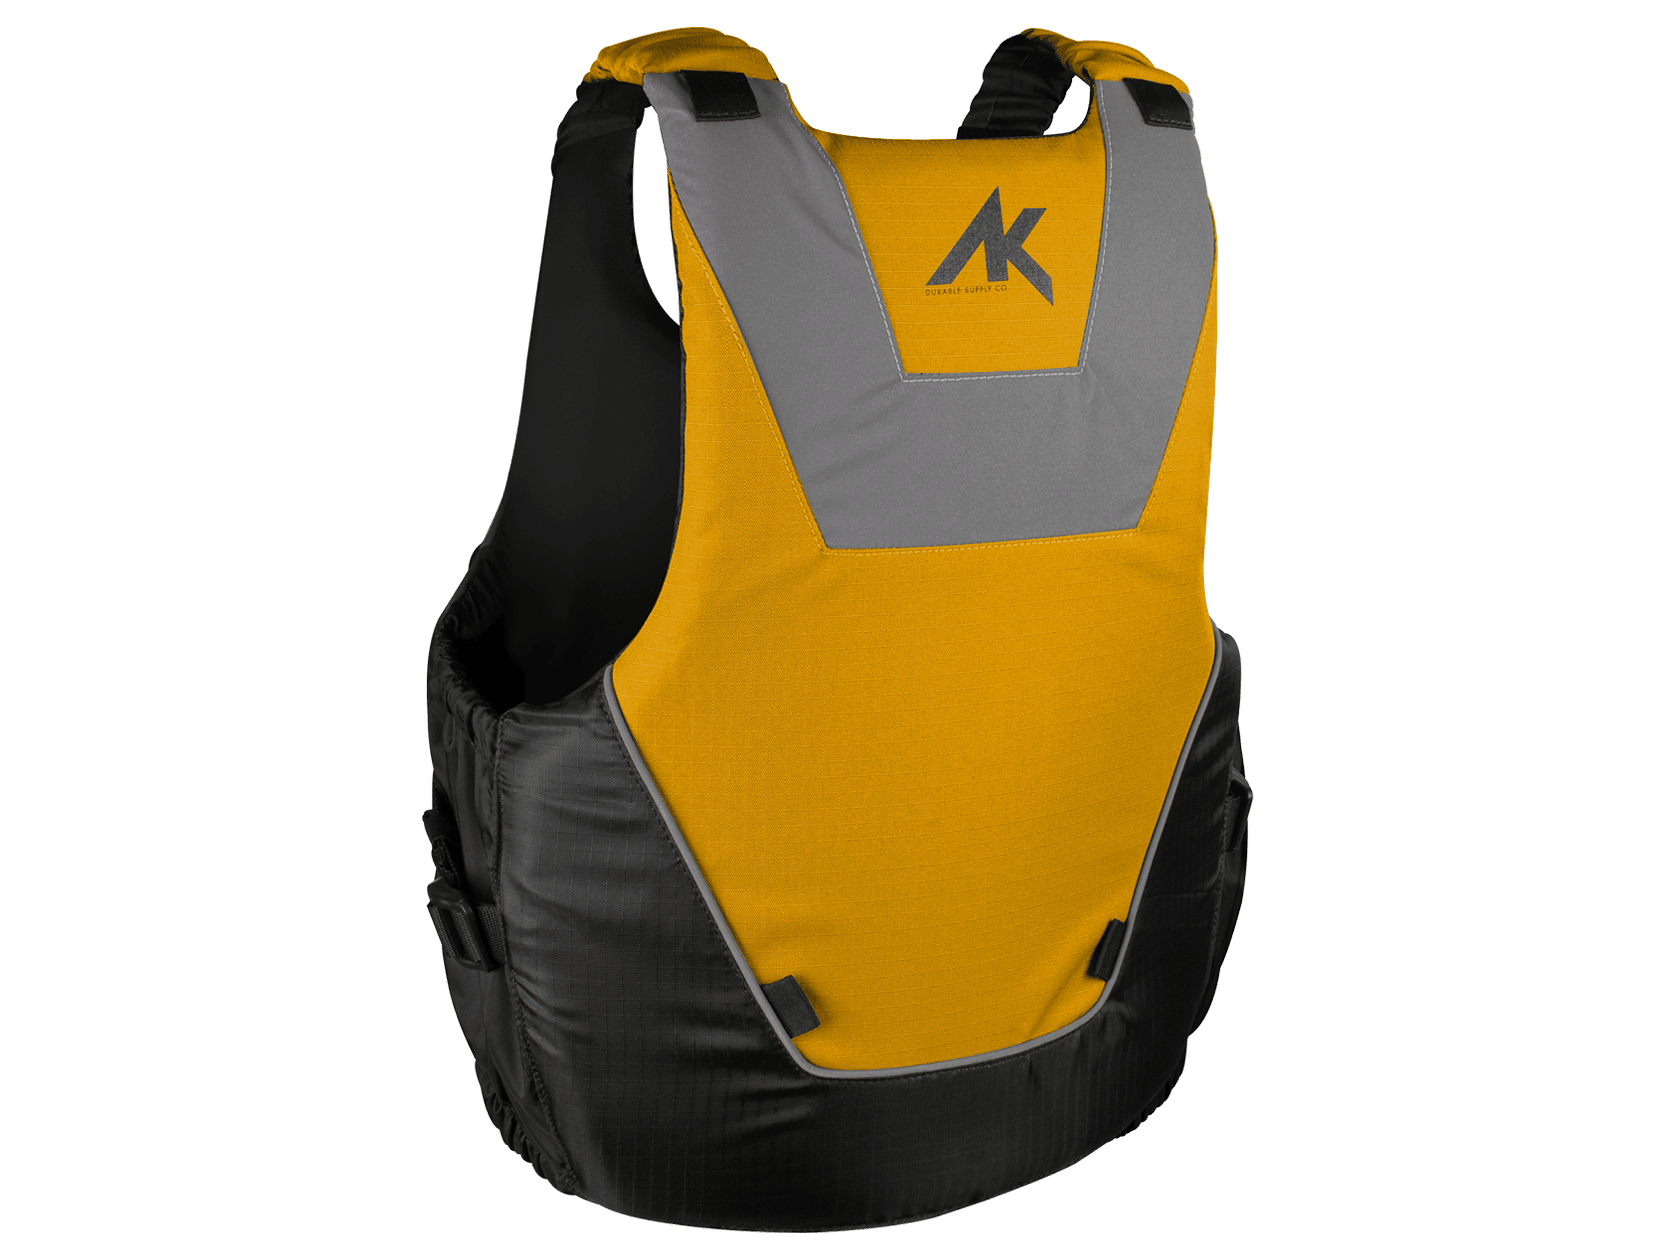 AK CE Approved Floatation Vest